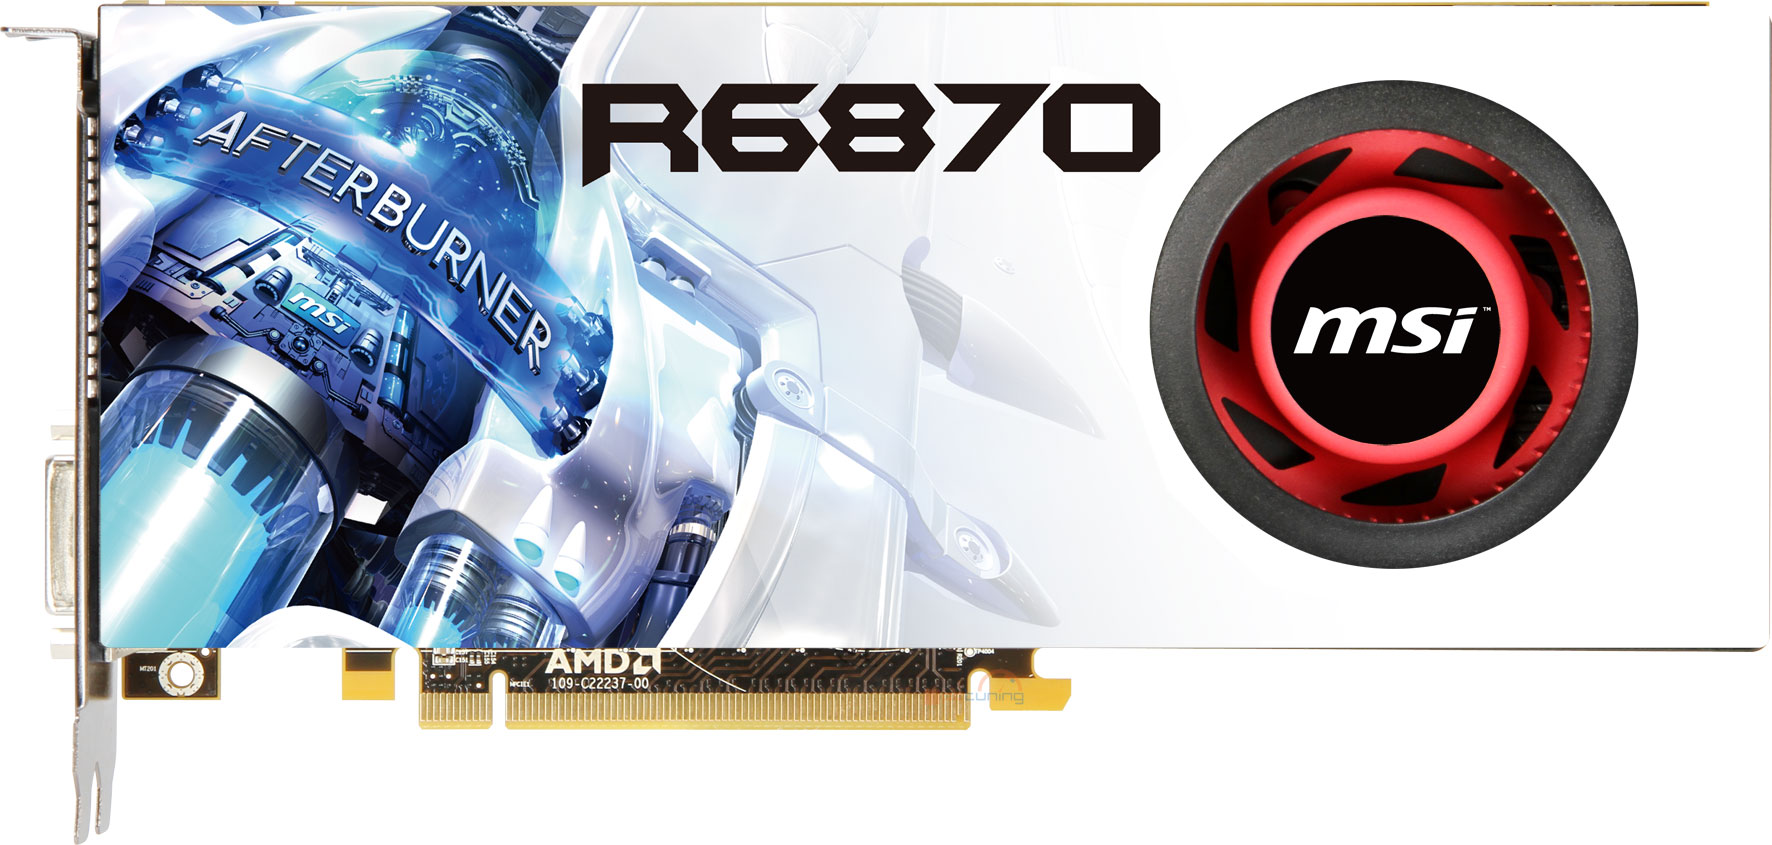 Duet nových Radeonů HD 6800 v podání MSI 